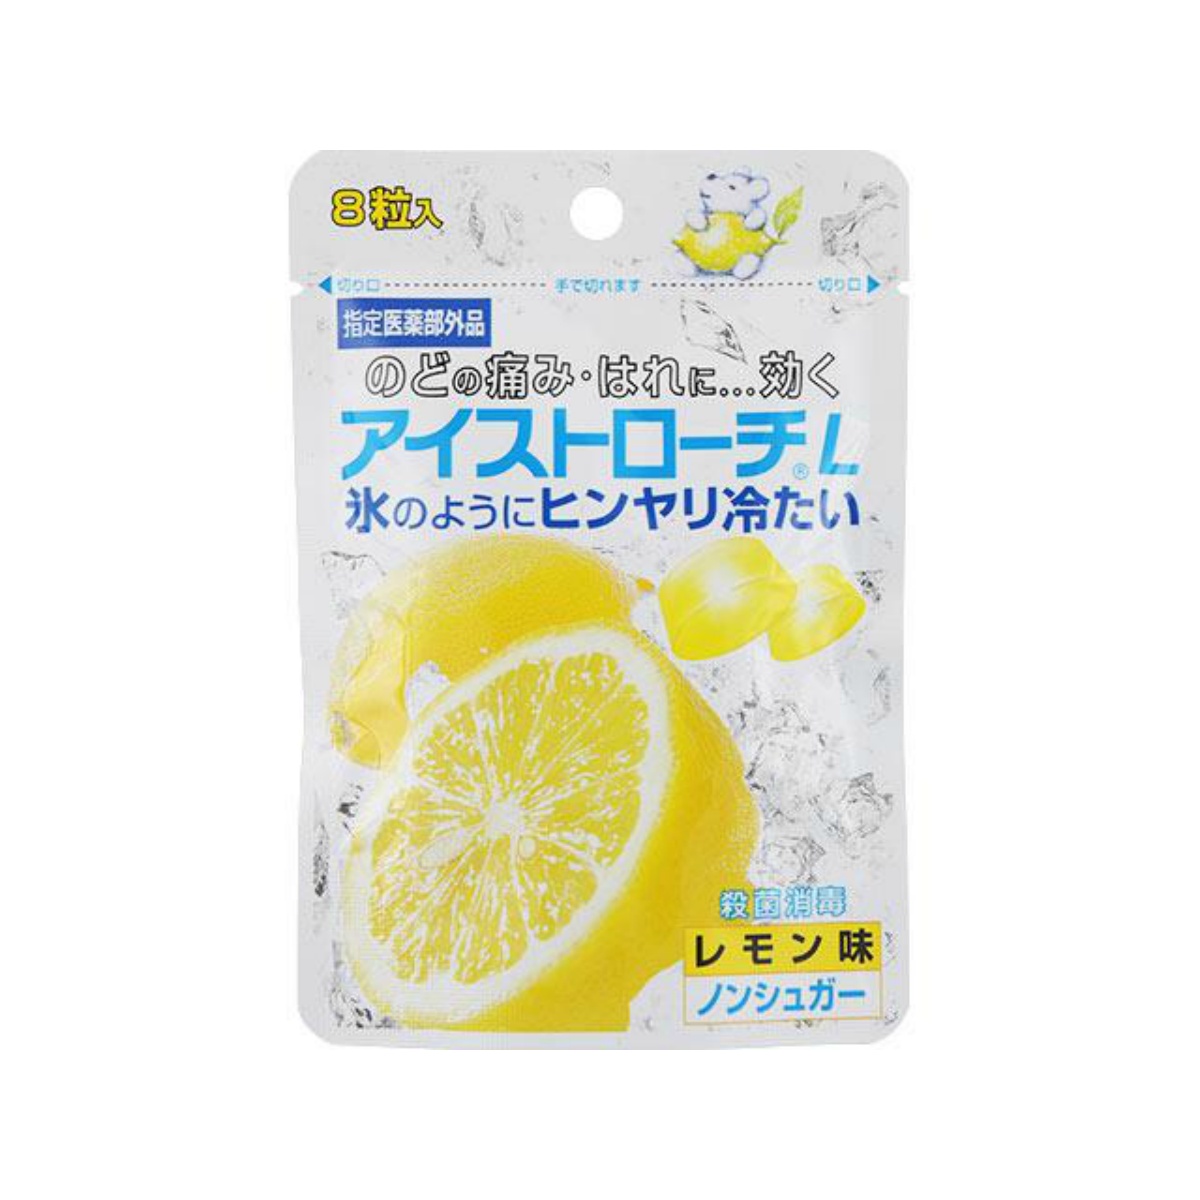 送料込 日本臓器製薬 アイストローチＬ 珍しい 1個 レモン味 8粒入 【限定特価】